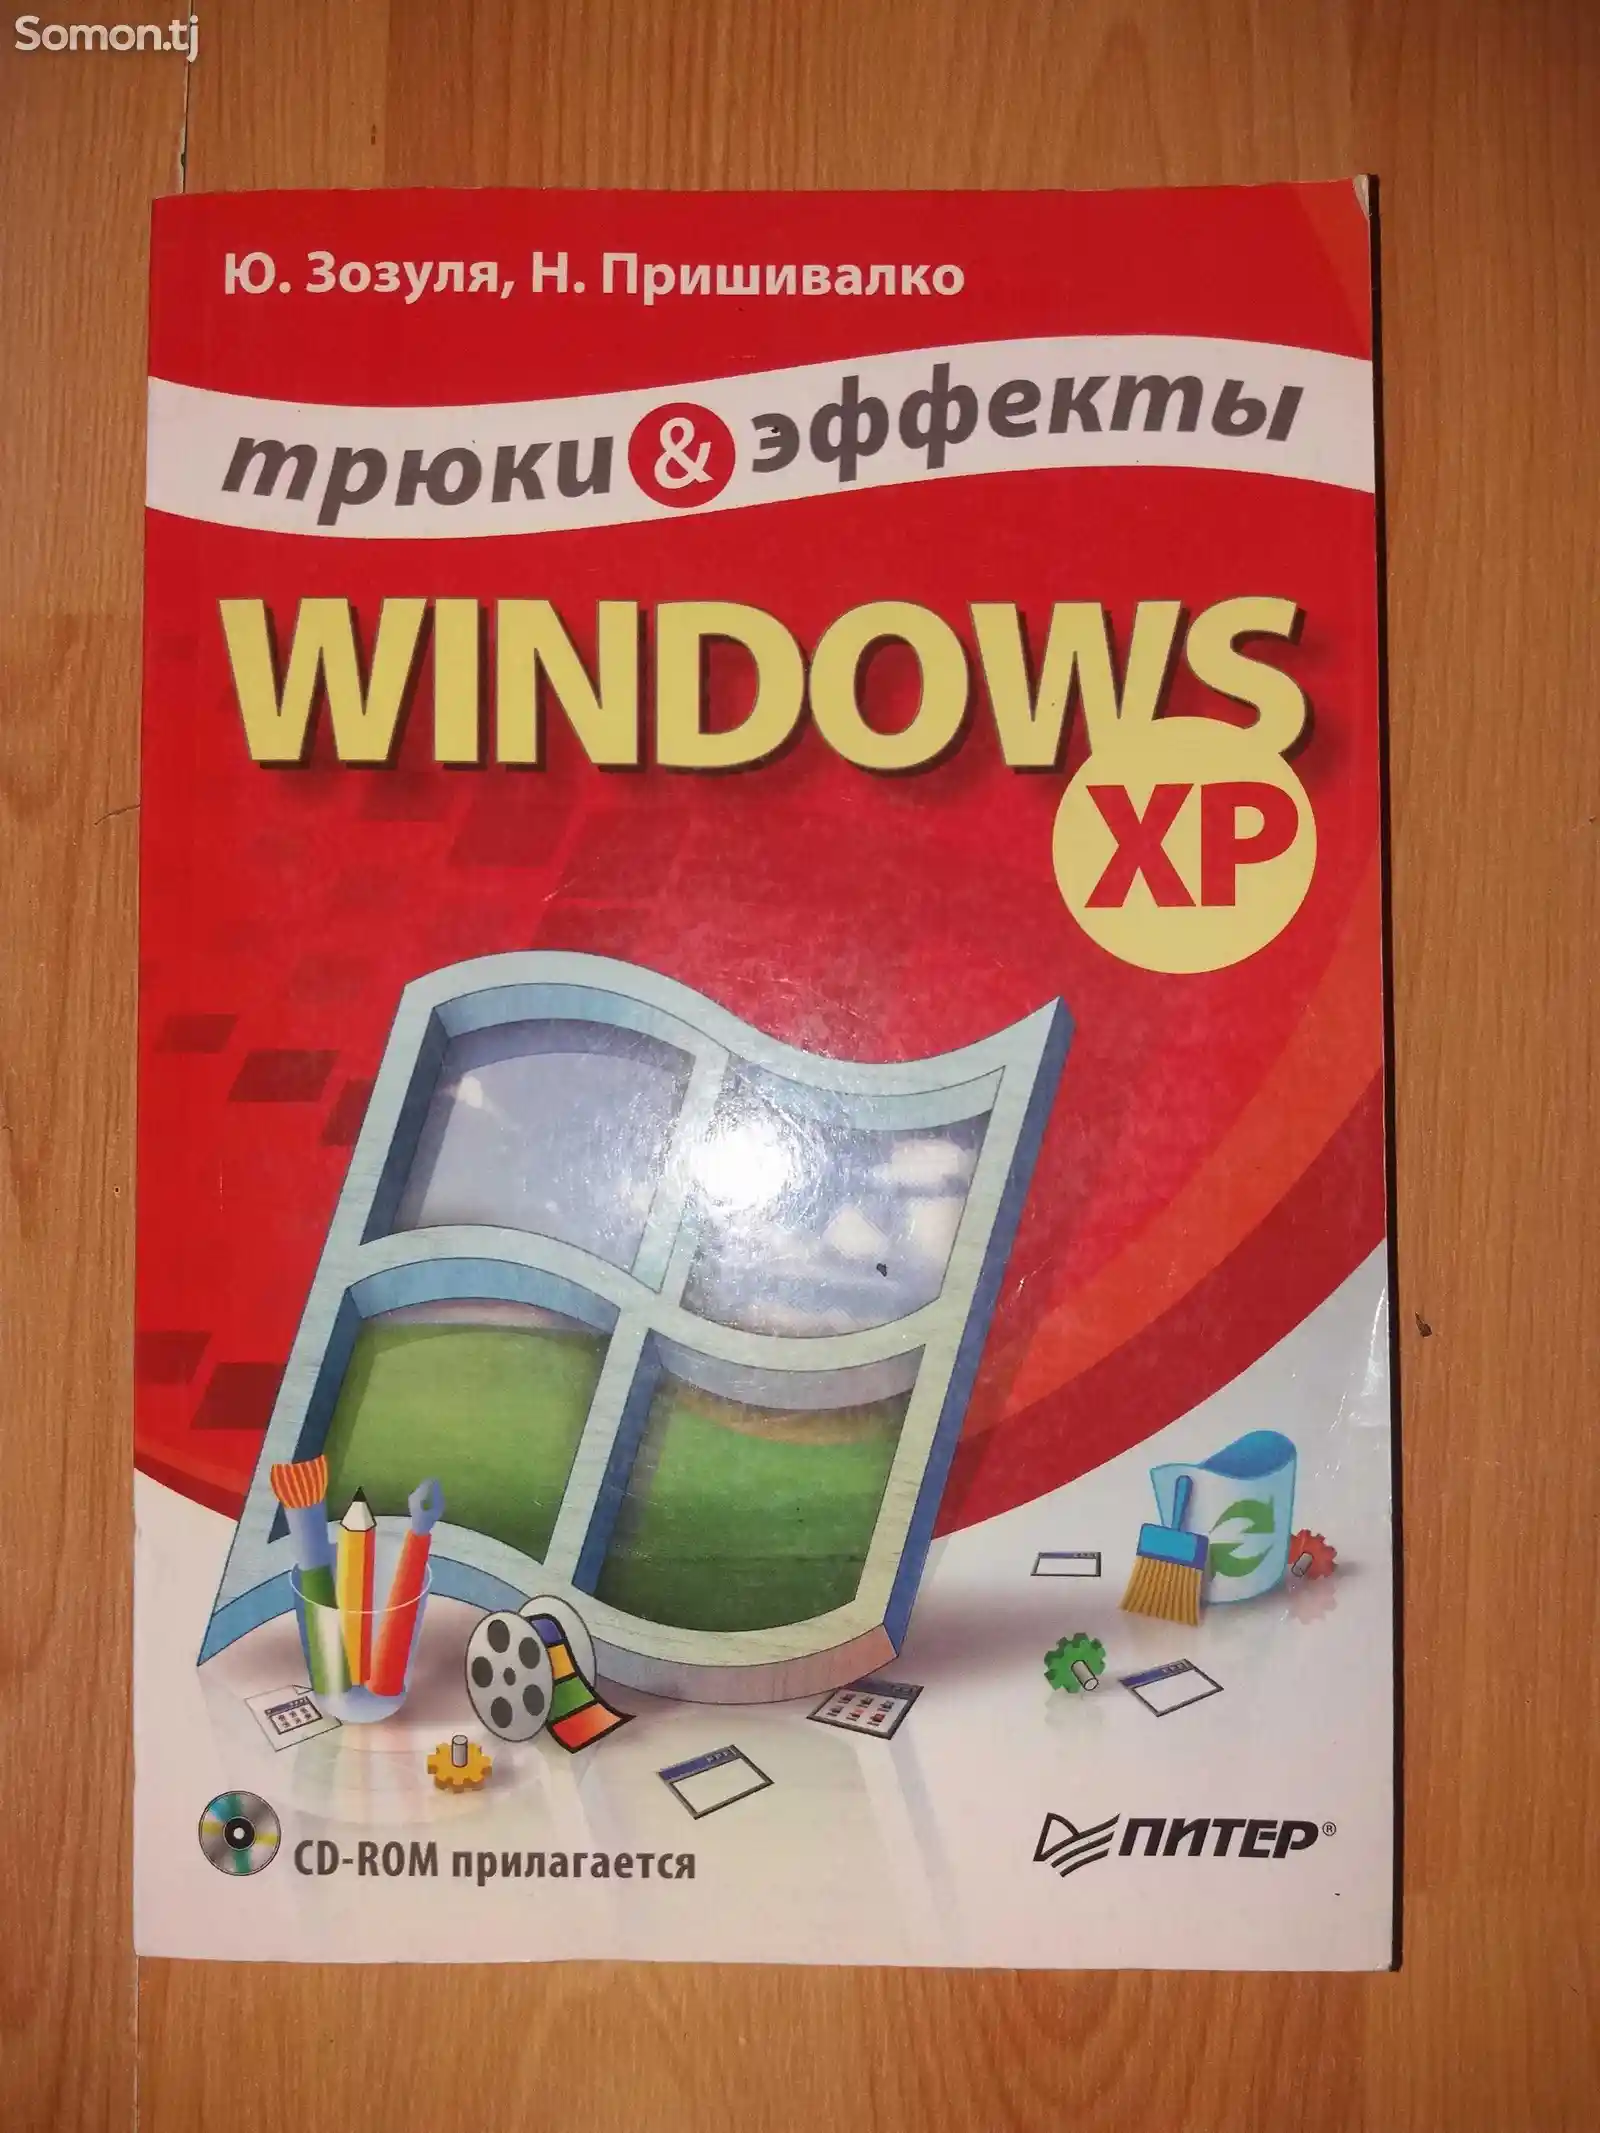 Книга Windows XP трюки & эффекты-1